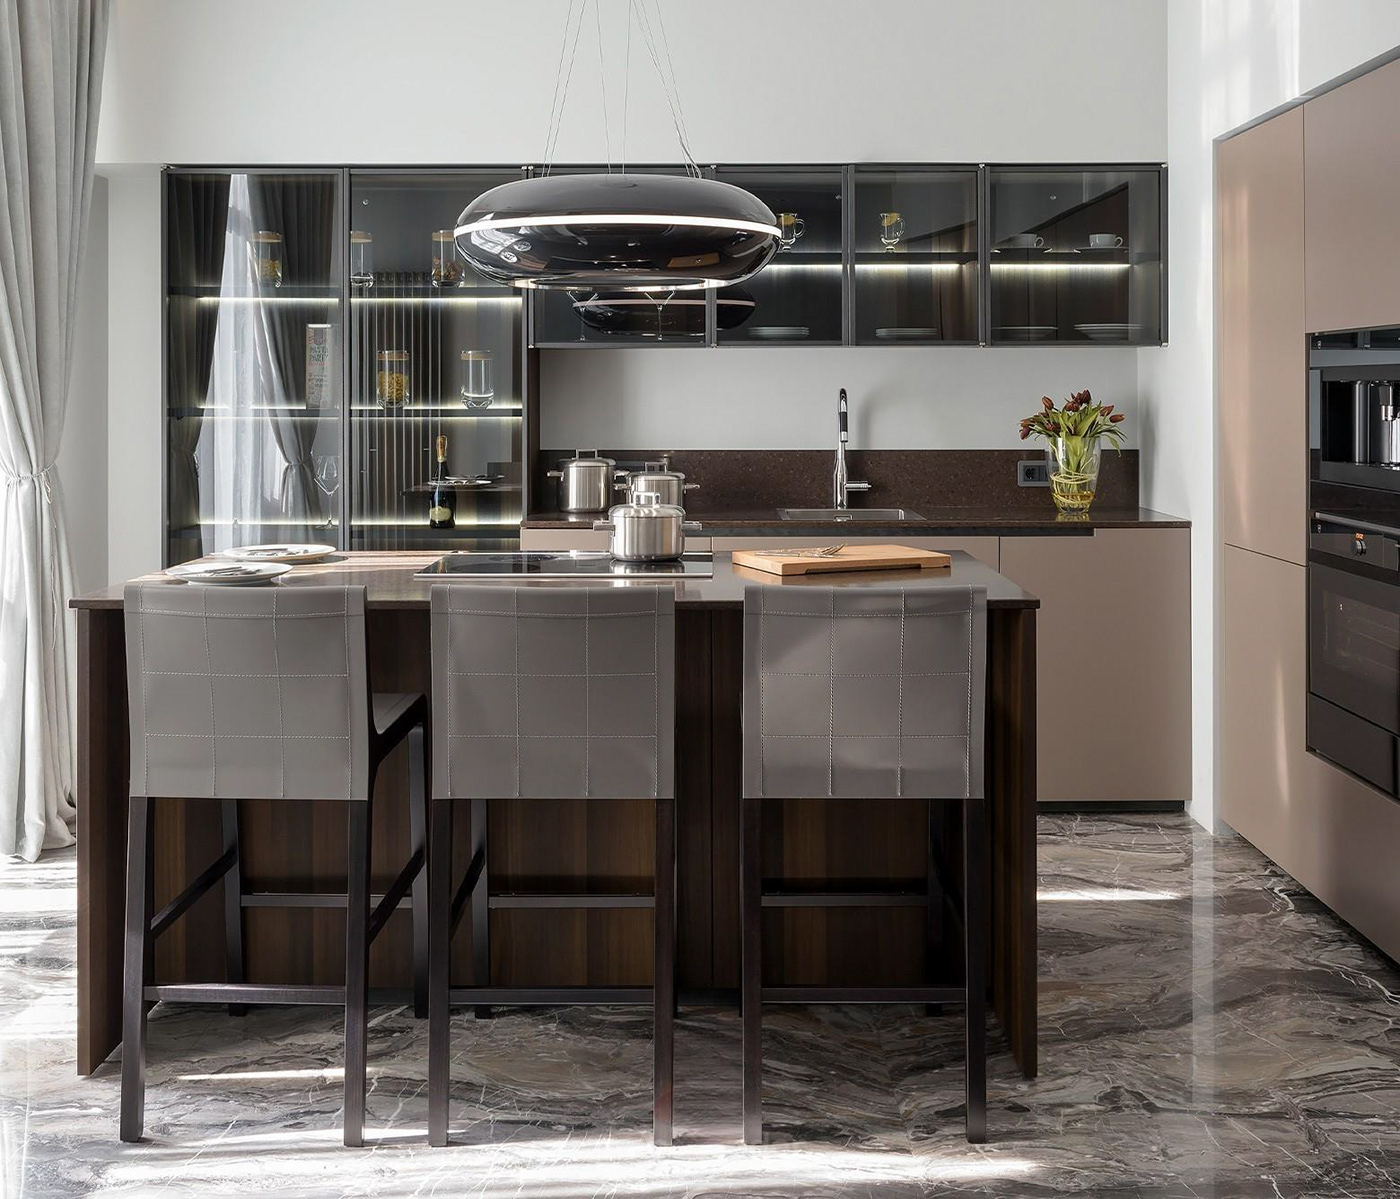 indoor interior design  architecture exterior modern design Minimalism kitchen 3ds max Render